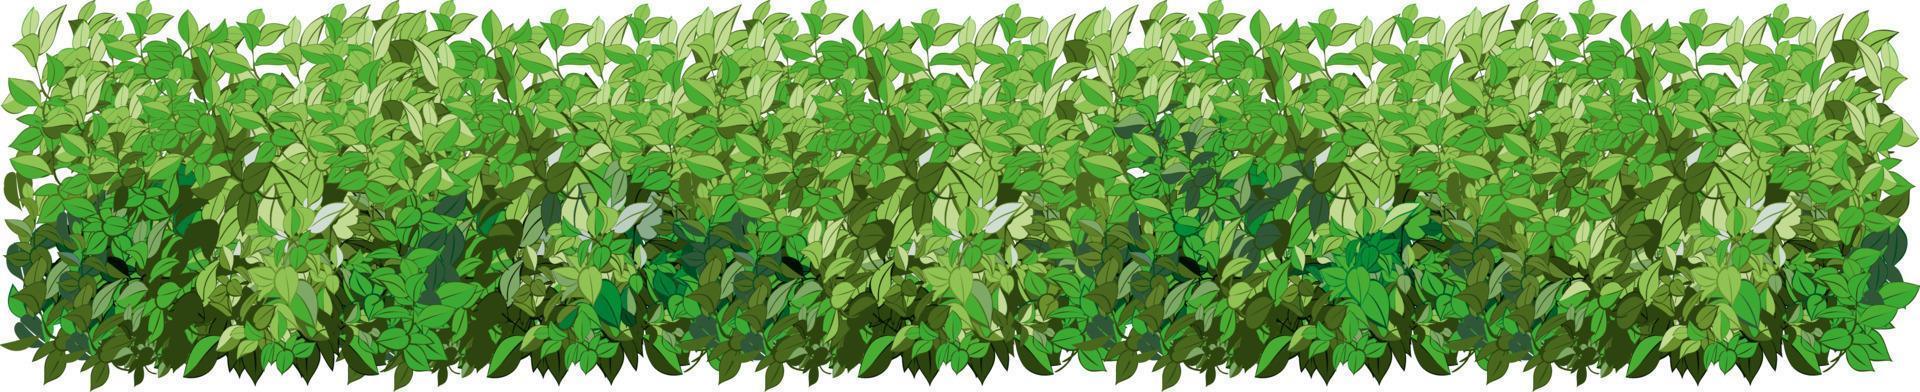 uppsättning av dekorativ grön växt i de form av en häck.realistisk trädgård buske, säsong- buske, buxbom, träd krona buske lövverk. vektor